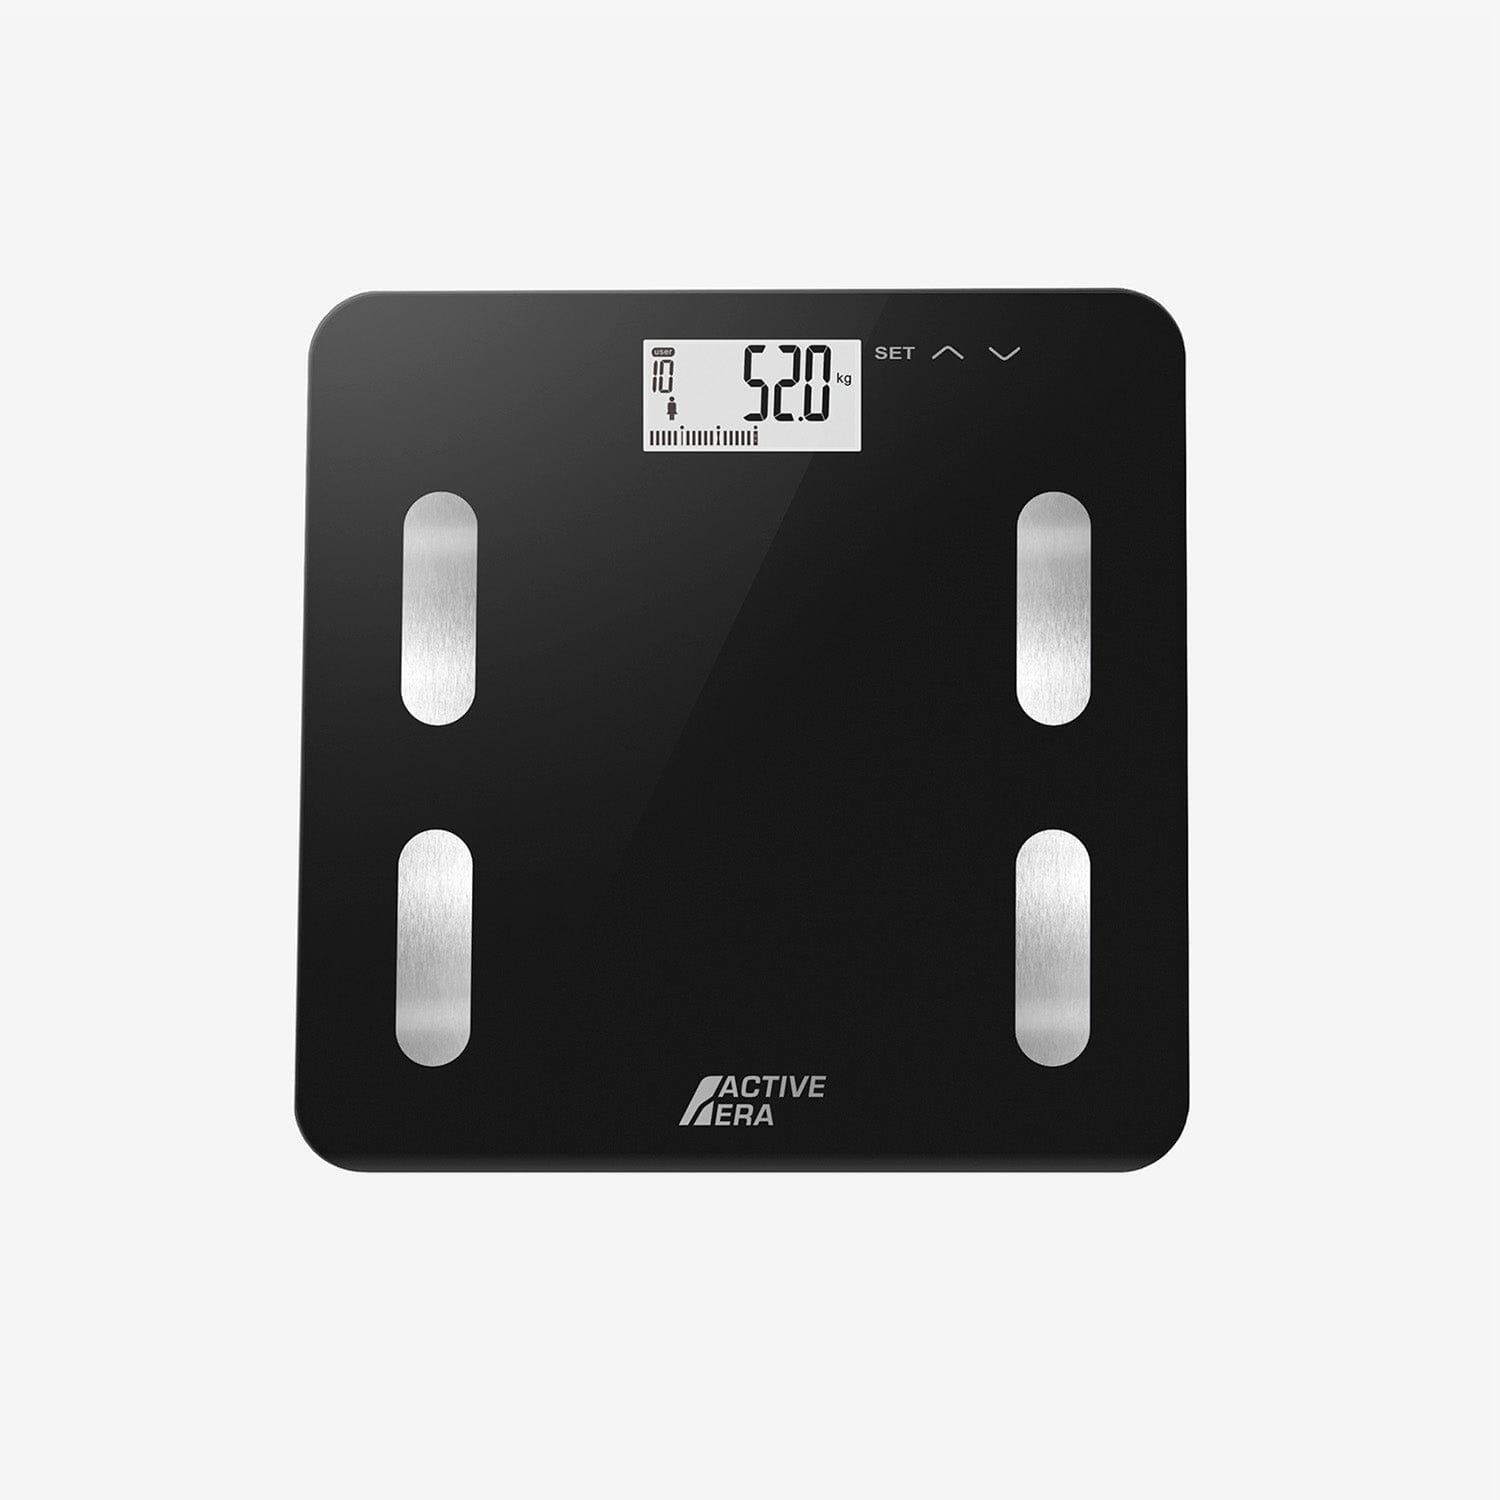 ACTIVE ERA Active Era Digital Bathroom Scales - Black